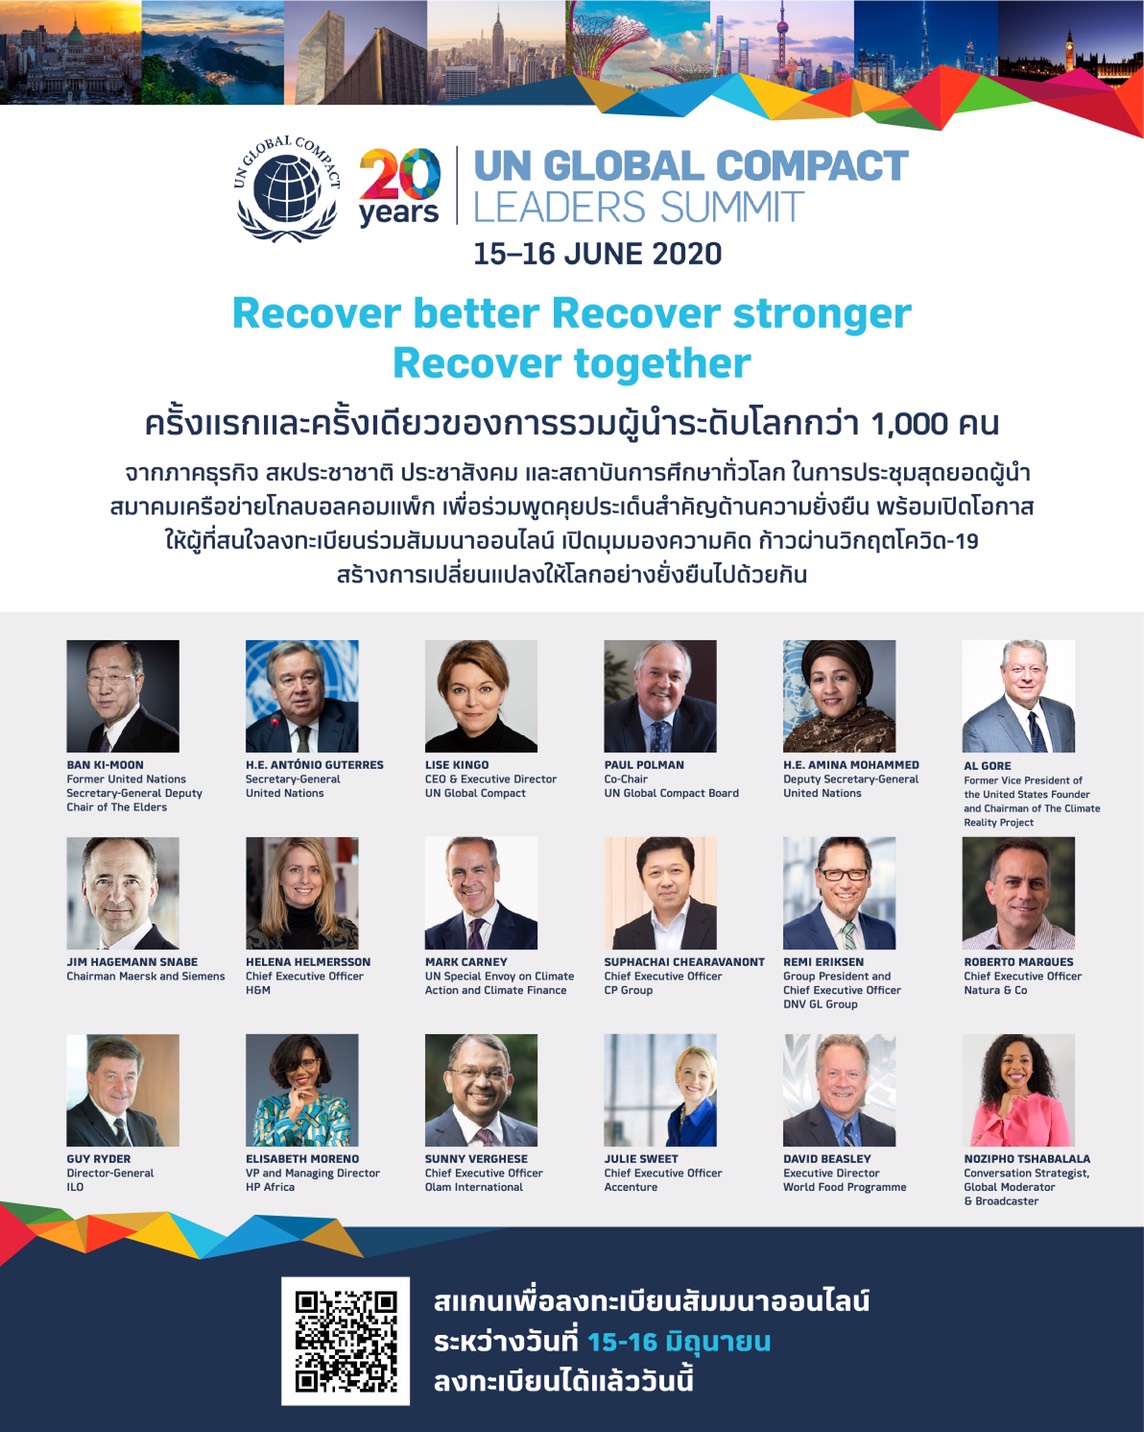 โกลบอลคอมแพ็ก (GCNT) เดรียมจัดฟอรั่มใหญ่ระดับโลก “Virtual Leader Summit 2020”